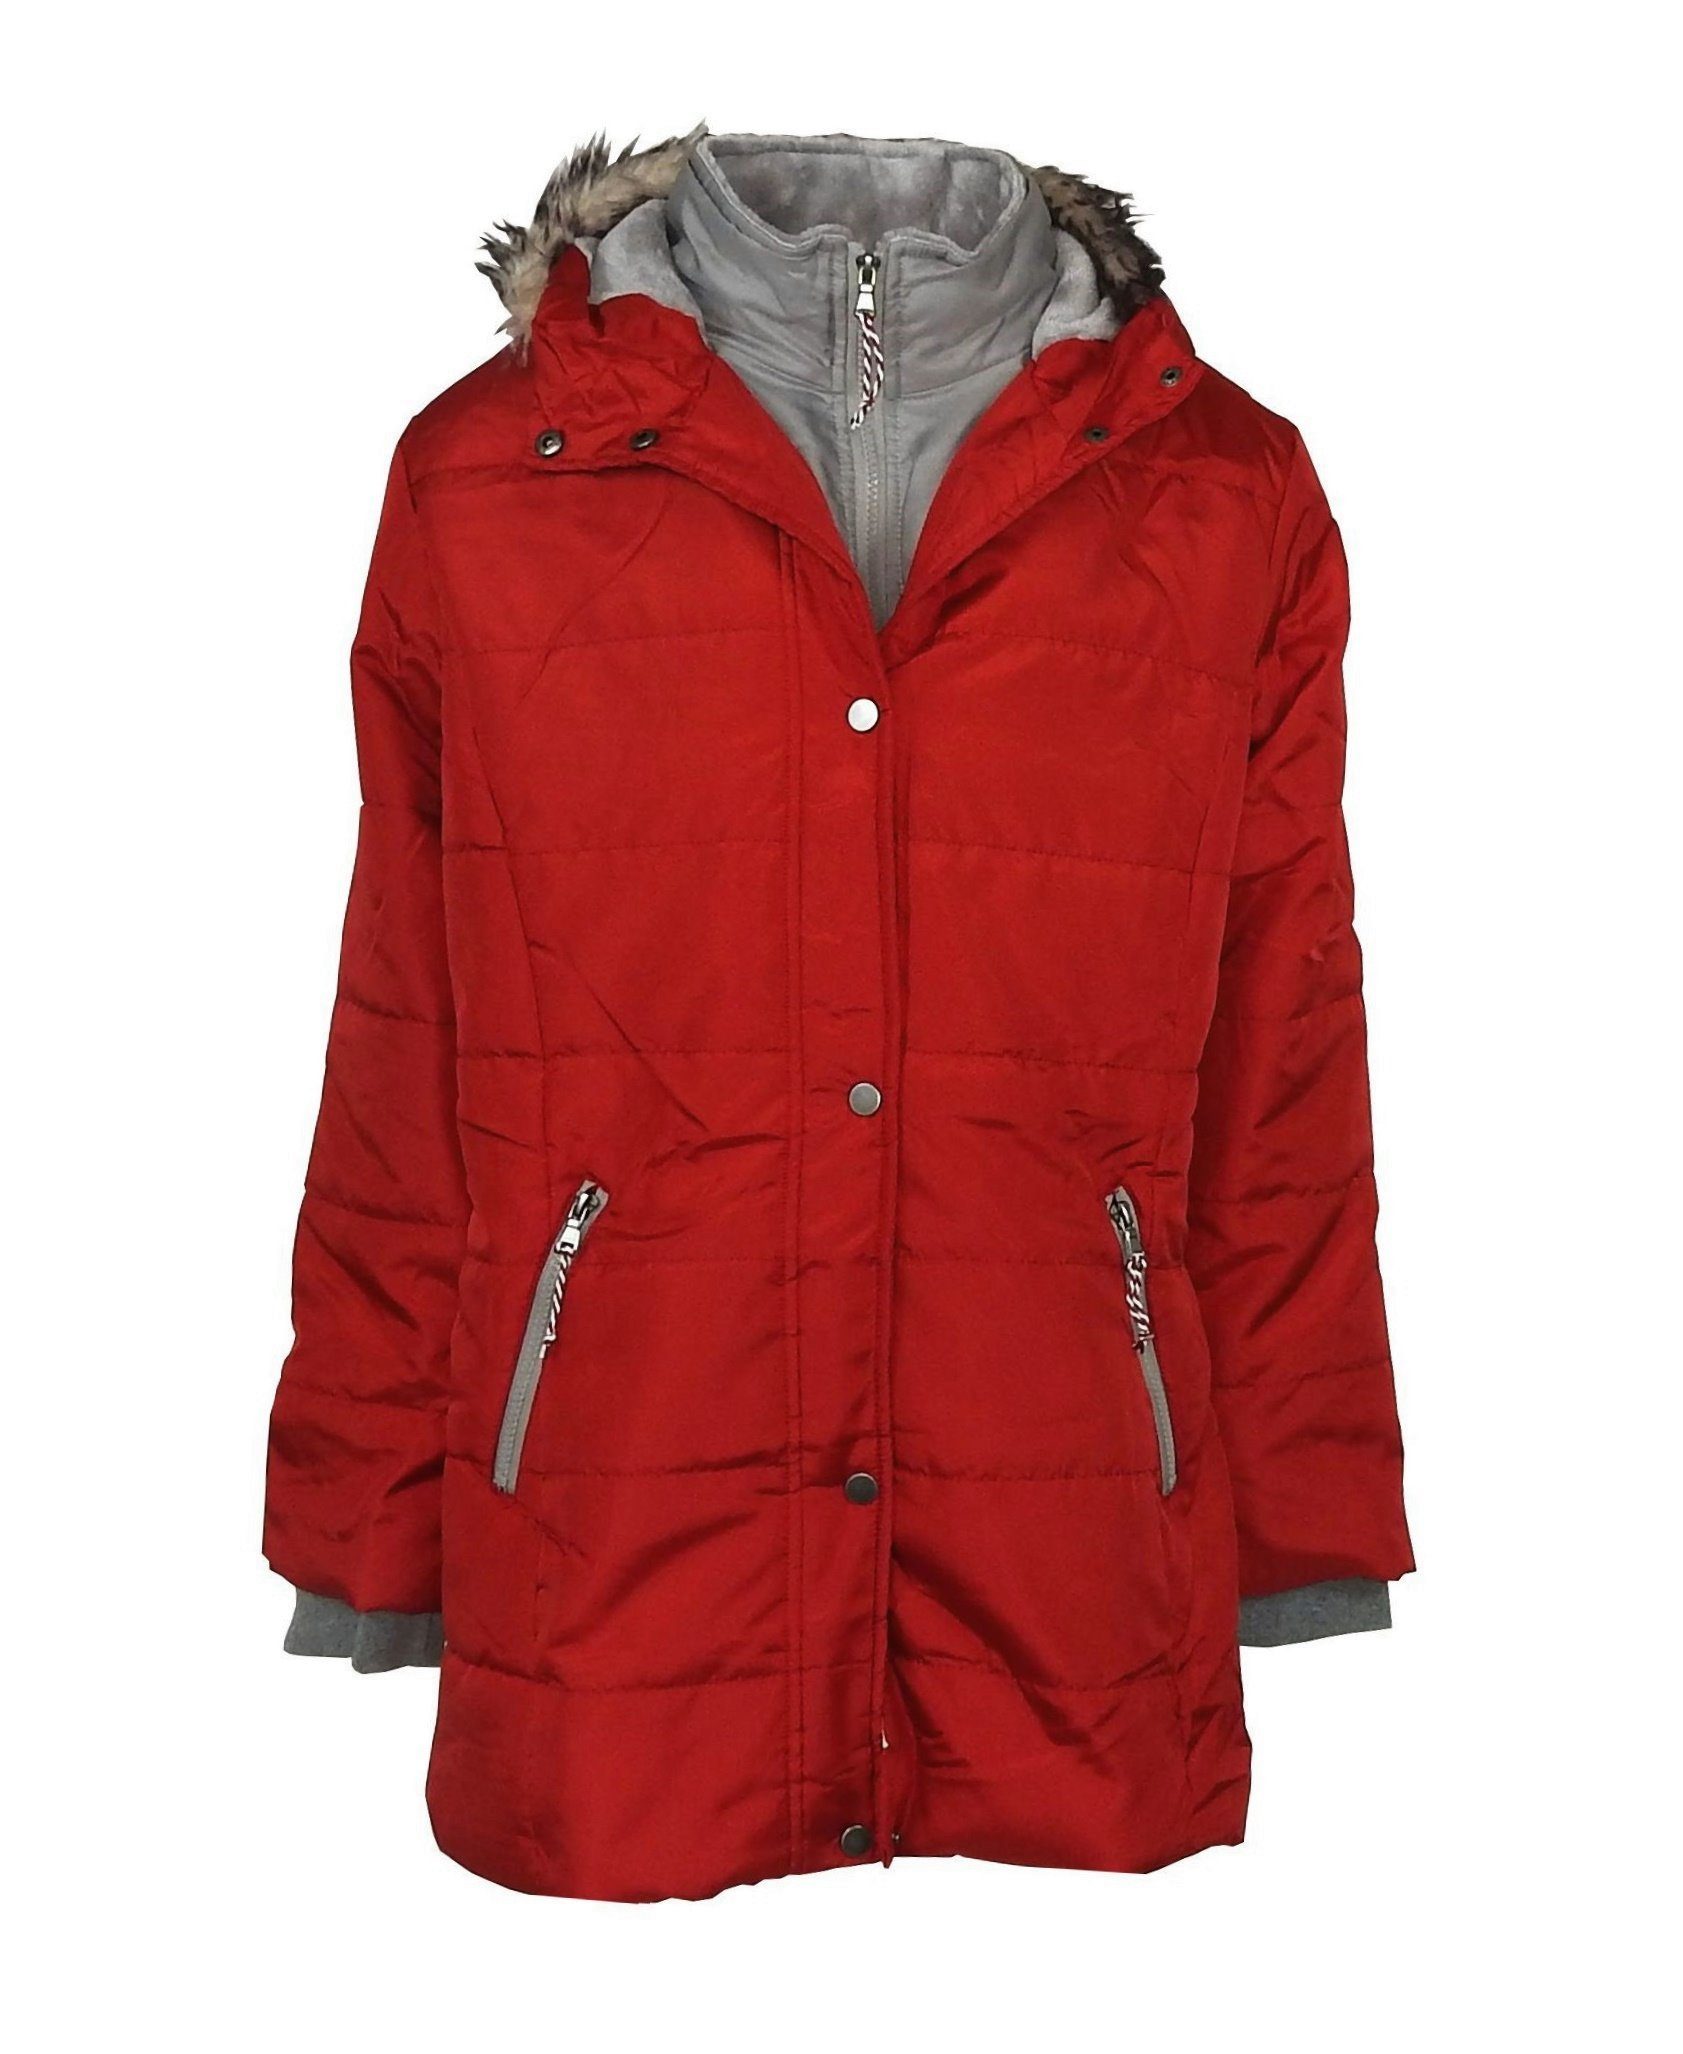 Damen Jacken dynamic24 Parka Steppjacke Mantel Übergangsjacke Herbstjacke Frühling Outdoor Jacke rot